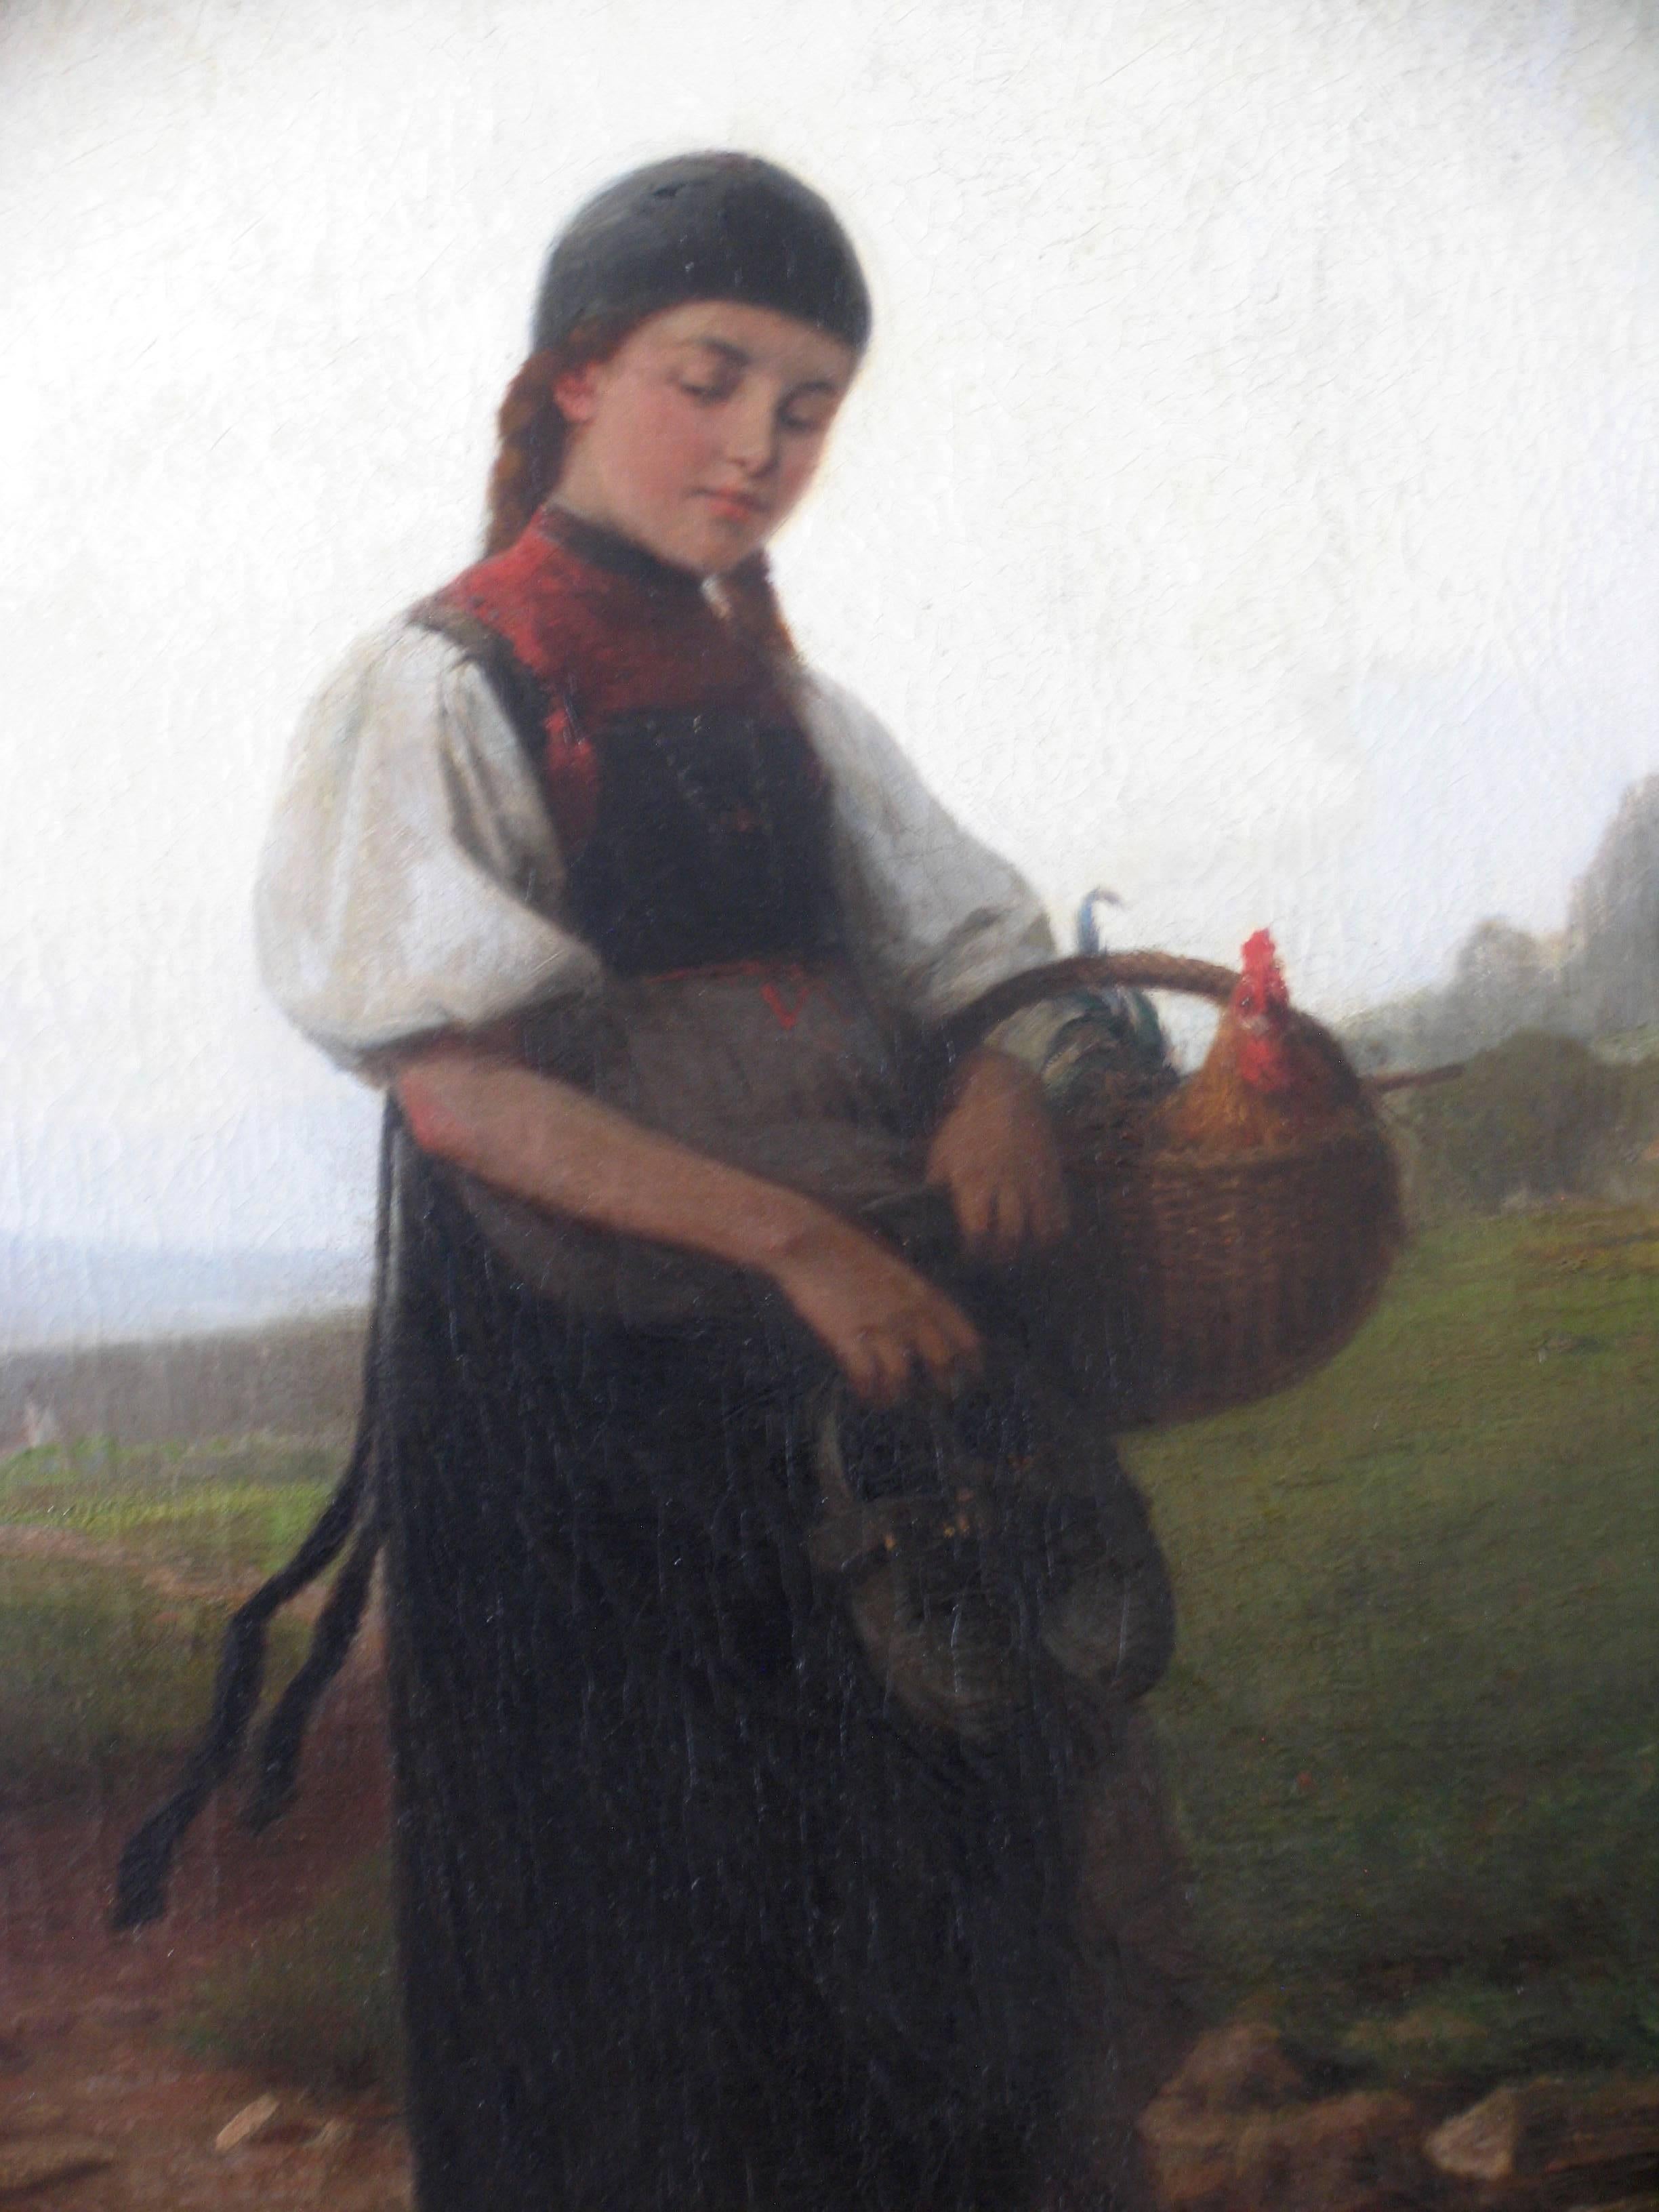 Une fille portant un costume traditionnel allemand porte un coq dans un panier.
Le peintre allemand Heinrich Ewers est né à Wismar en 1817 et est mort à Duesseldorf en 1895. Huile sur toile.
Le tableau sera expédié directement d'Allemagne.